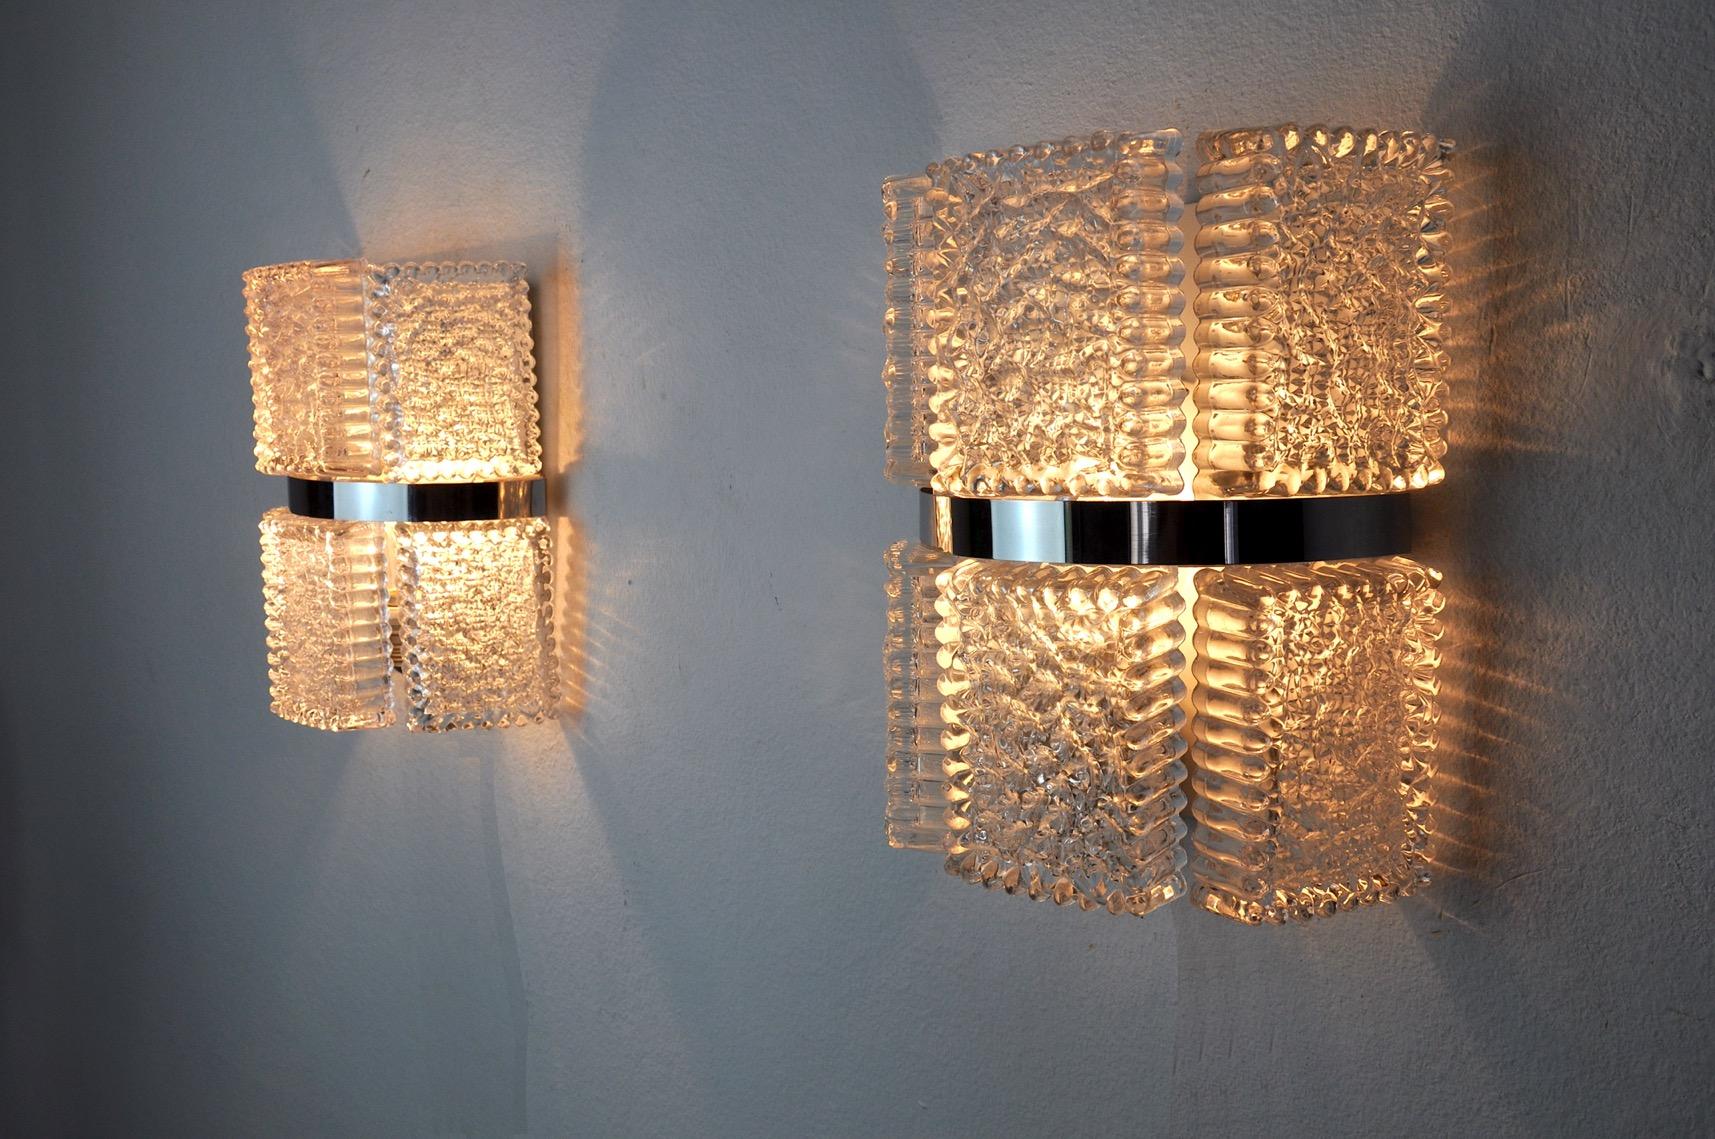 Sehr schönes Paar Kaiser Leuchten Wandlampen, entworfen und hergestellt in Deutschland in den 1960er Jahren.
Struktur aus mattiertem Glas und weißem Metall.
Einzigartiges Objekt, das wunderbar leuchtet und Ihrer Einrichtung einen echten Design-Touch